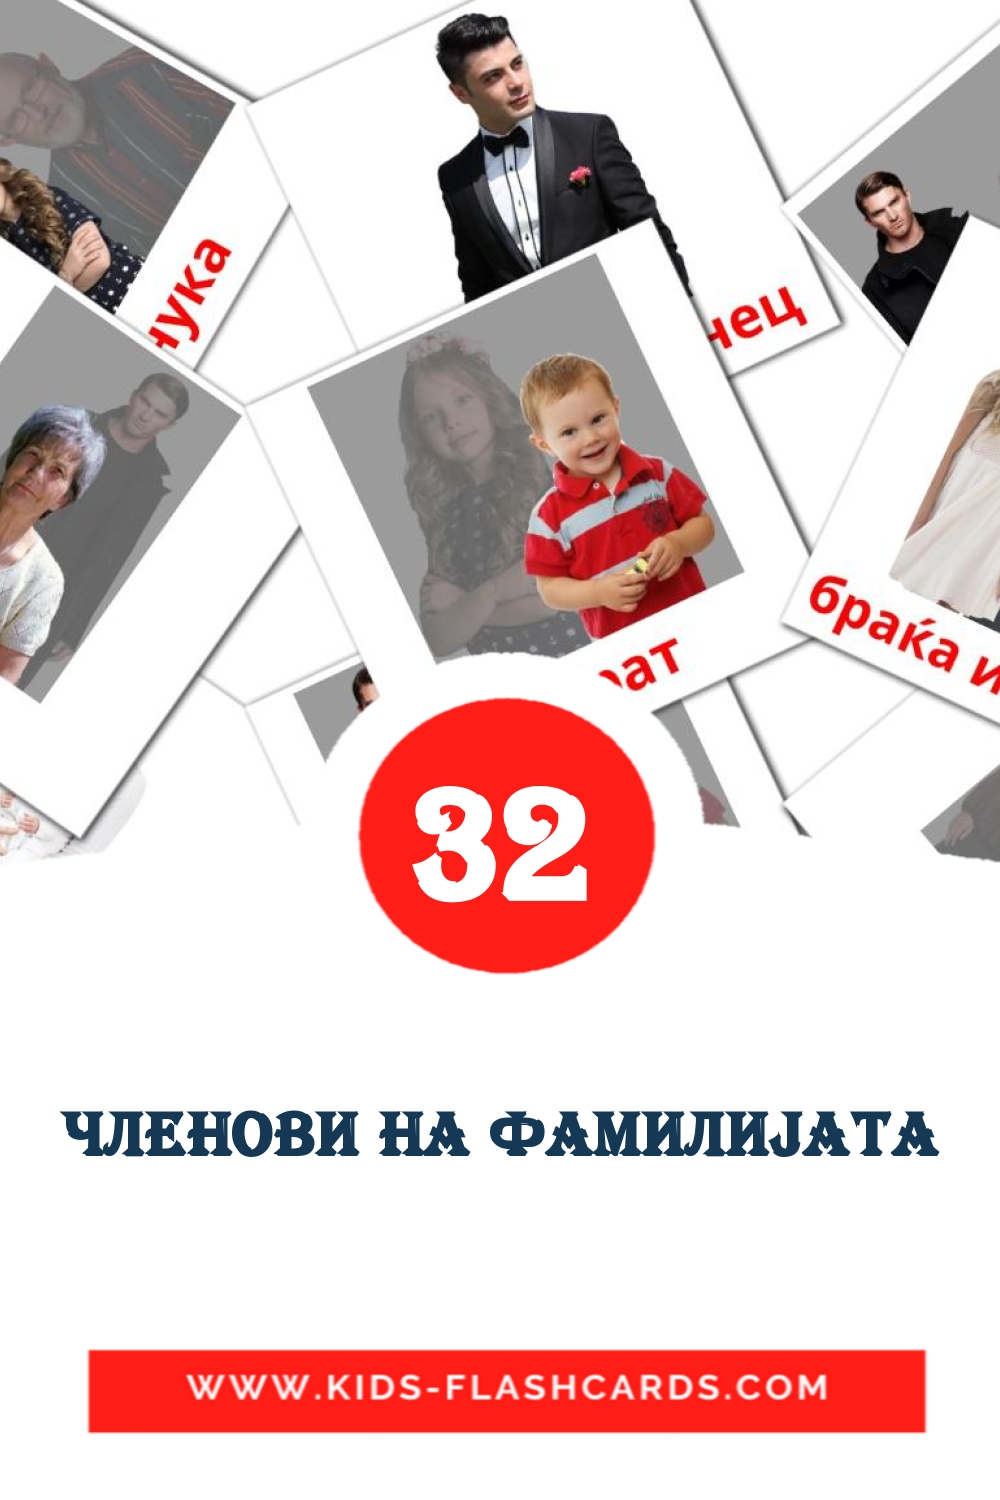 32 Cartões com Imagens de Членови на фамилиjата para Jardim de Infância em macedônia